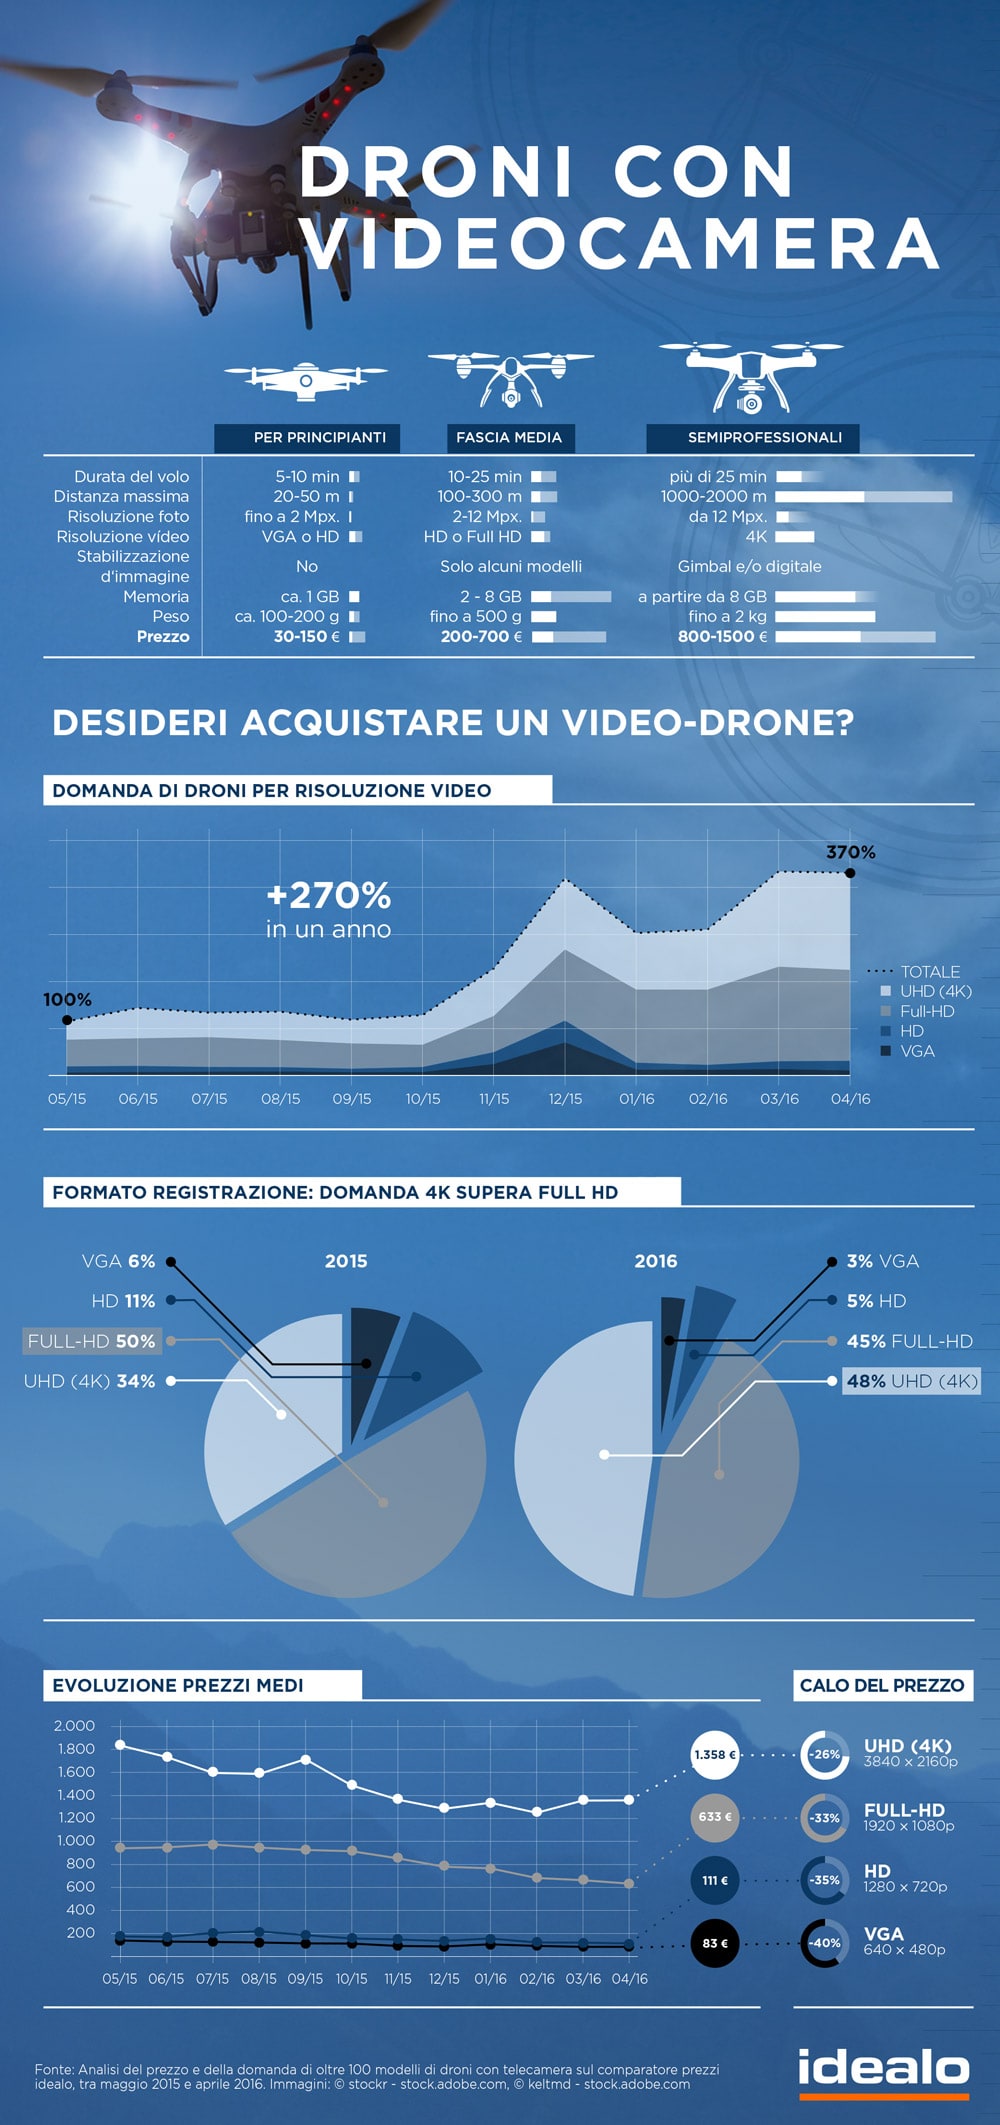 Droni con videocamera infografica